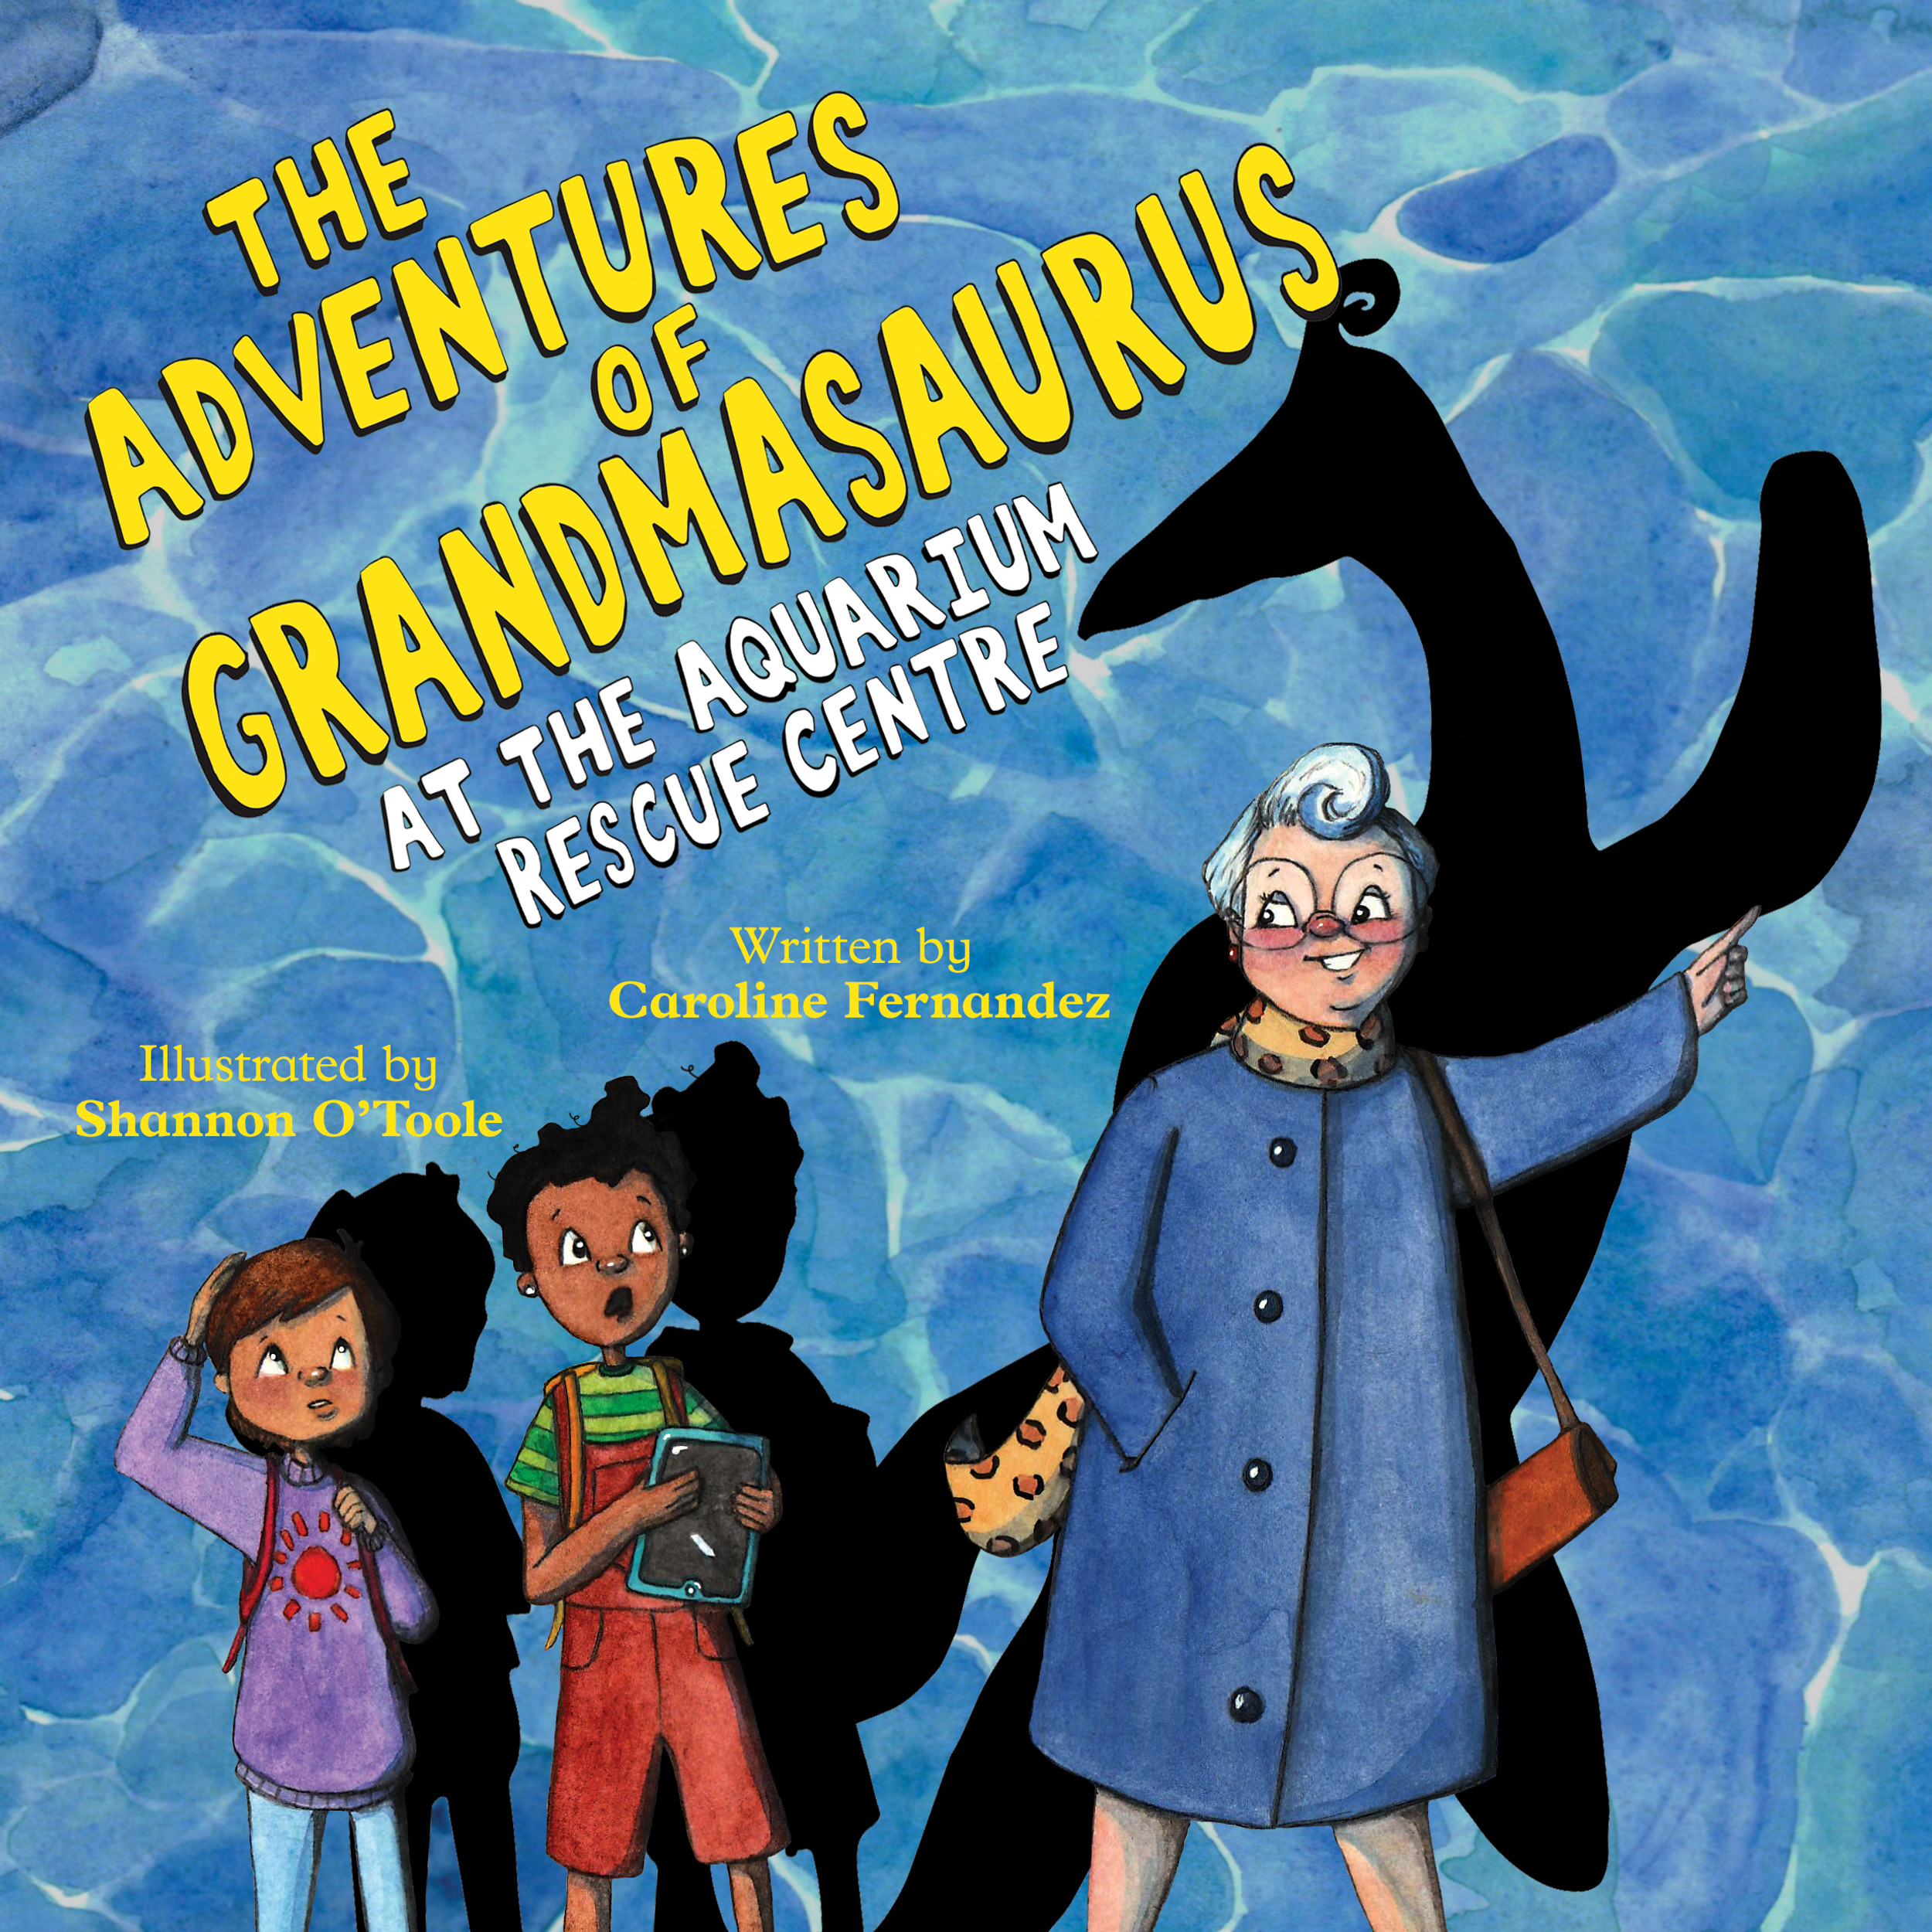 The Adventures of Grandmasaurus at the Aquarium Rescue Centre